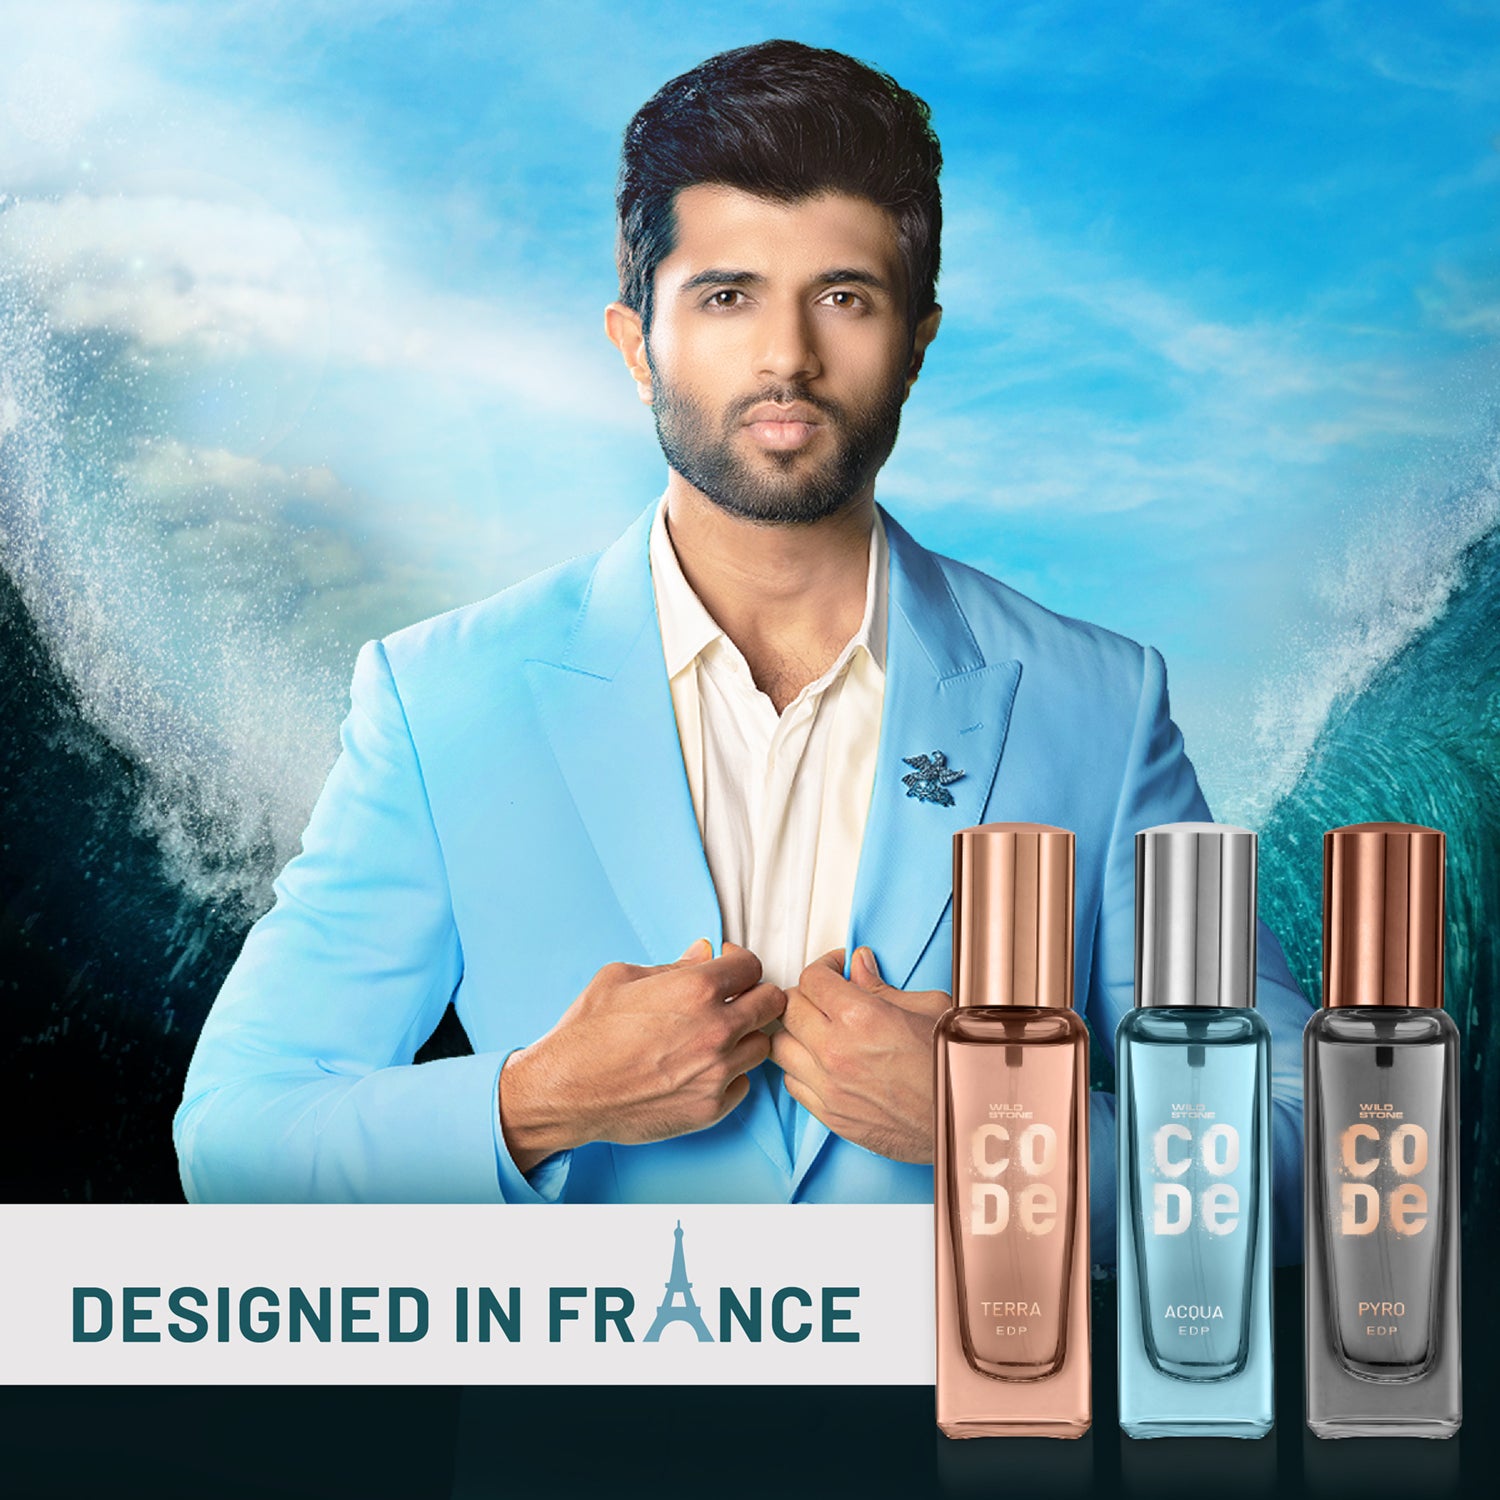 Buy The Man Company Perfume Gift Set for Men 4 * 50ml- A Gentleman's Choice  | Premium Long-Lasting Eau De Parfum & Eau De Toilette Body Spray For Men |  For Party,